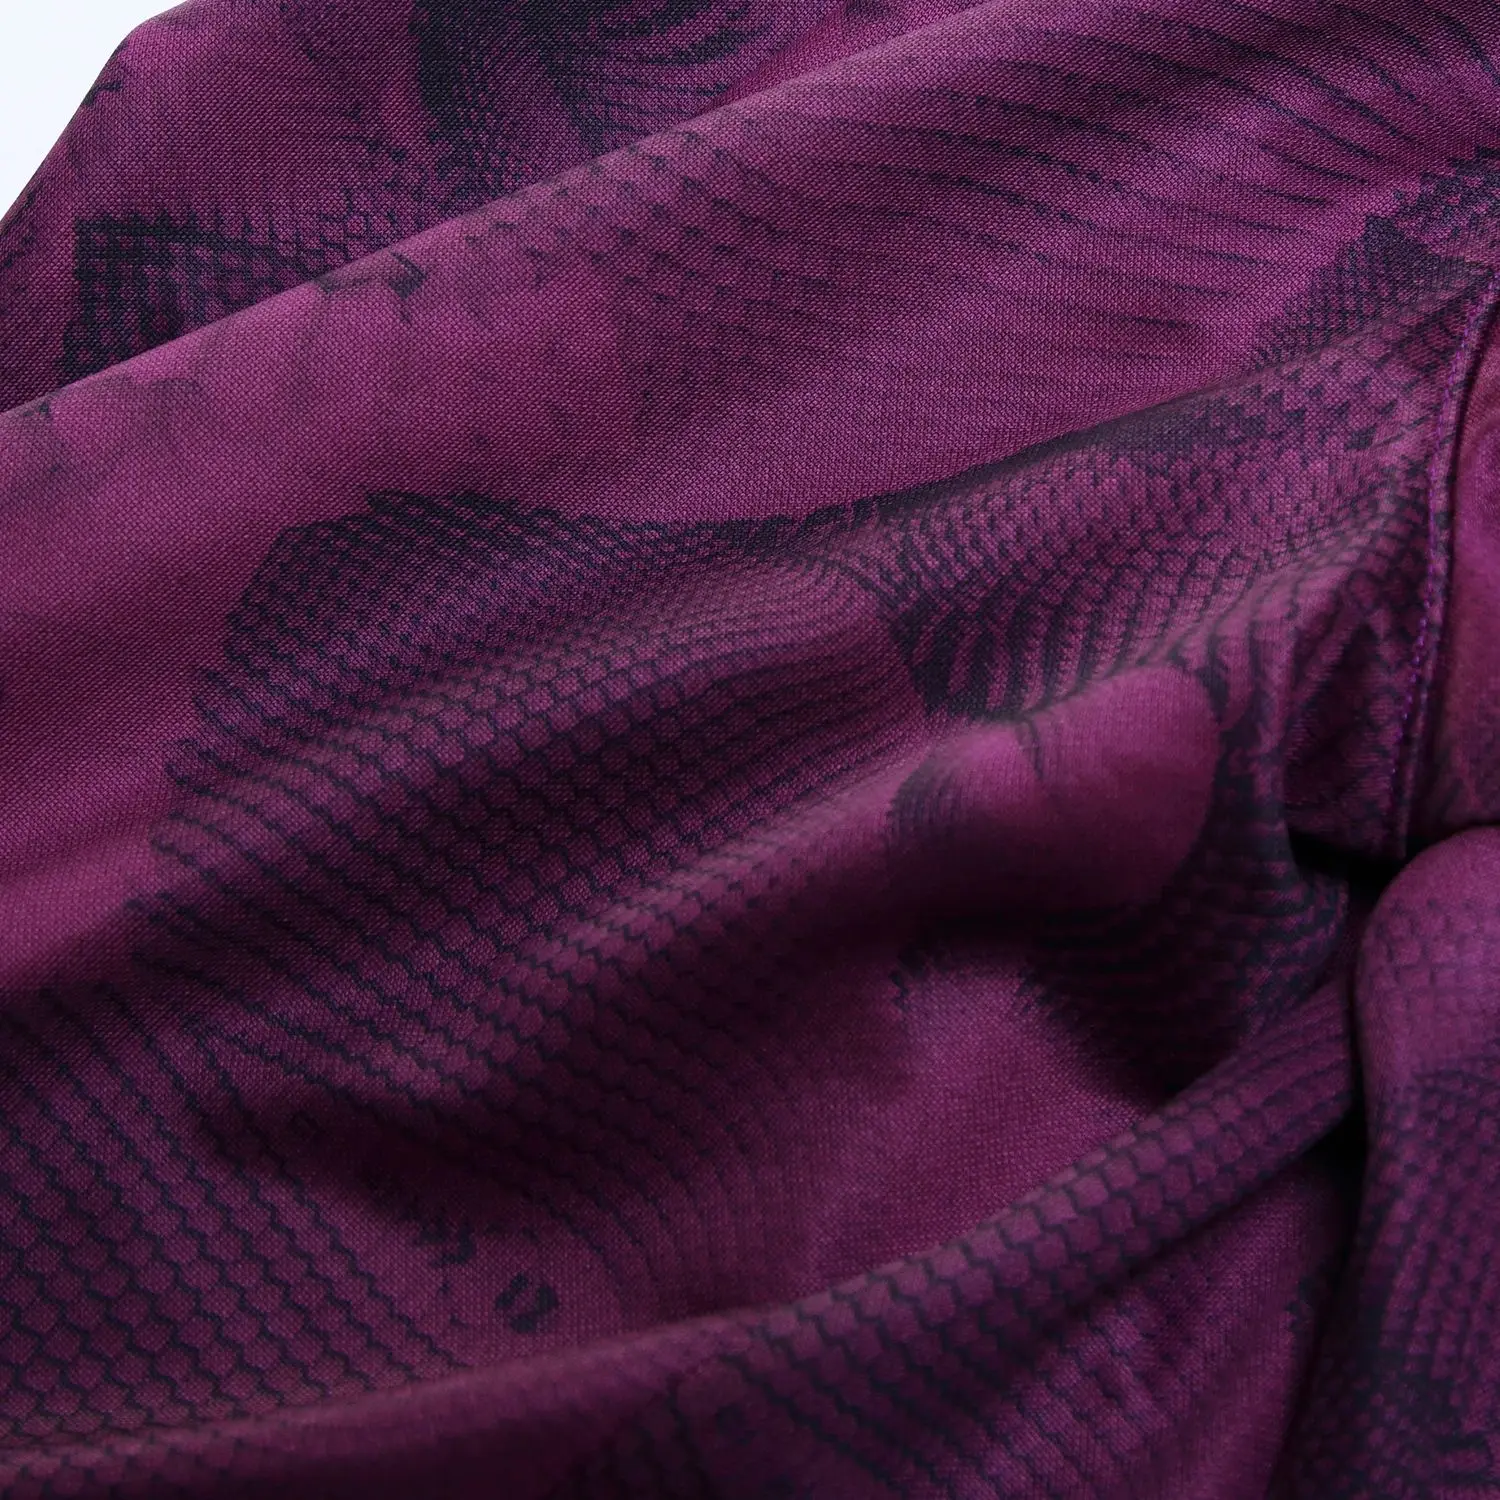 SYNSLOVE дизайн волнистый принт тренировочный Баскетбол Бег Коби Брайант спортивные шорты свободные половина длины размера плюс с двойным карманом